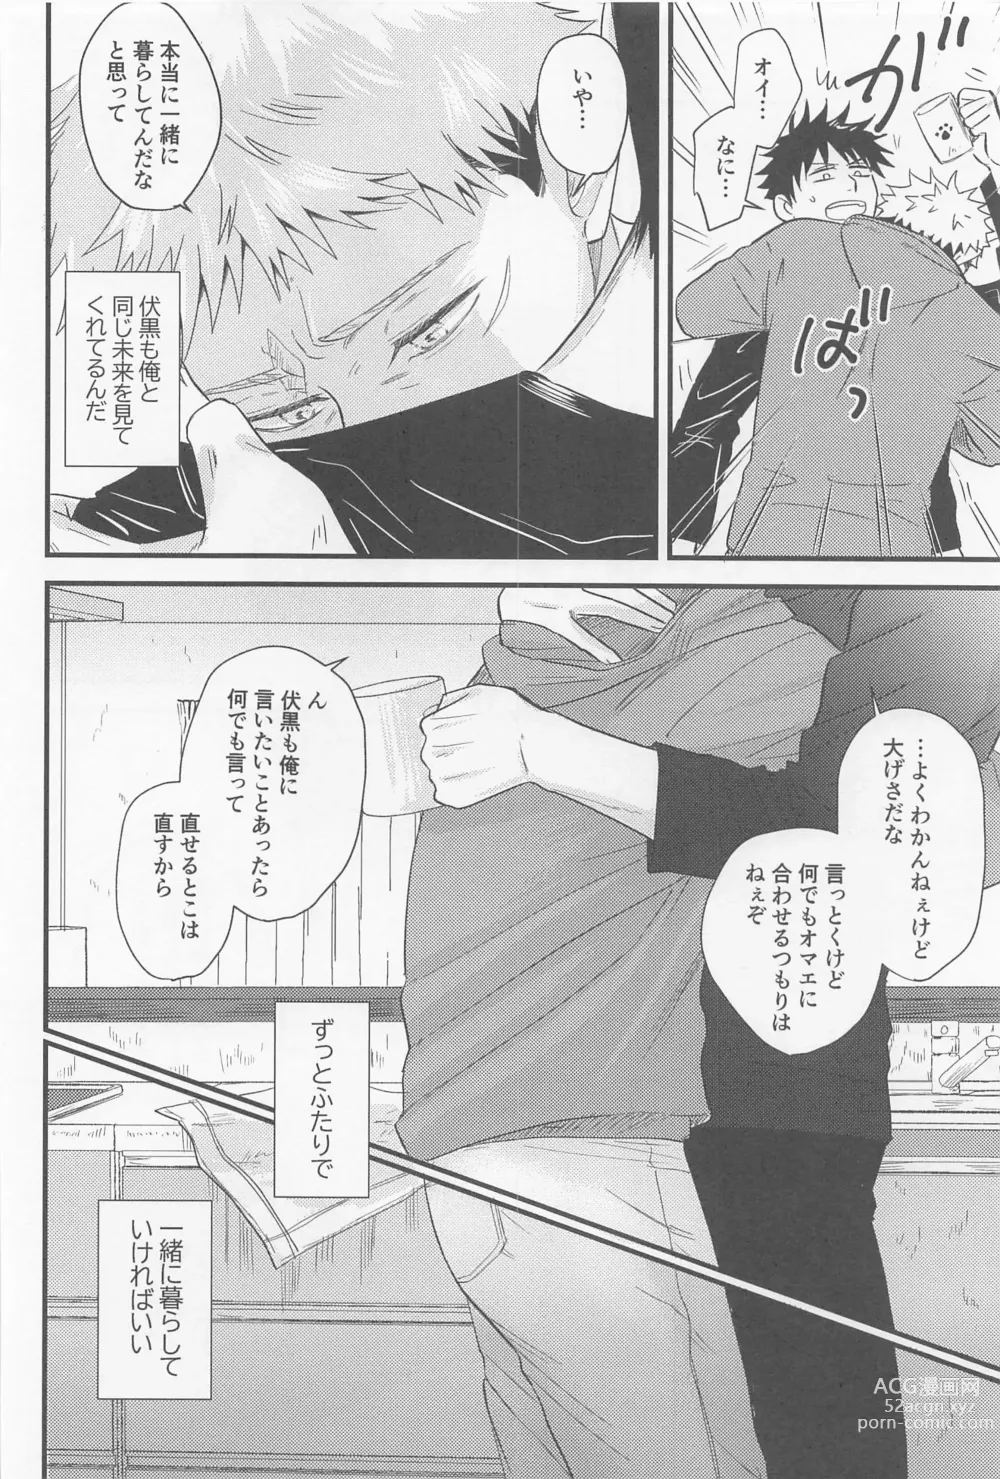 Page 13 of doujinshi Bokura ga Futari de Kurashitara - If we lived together.